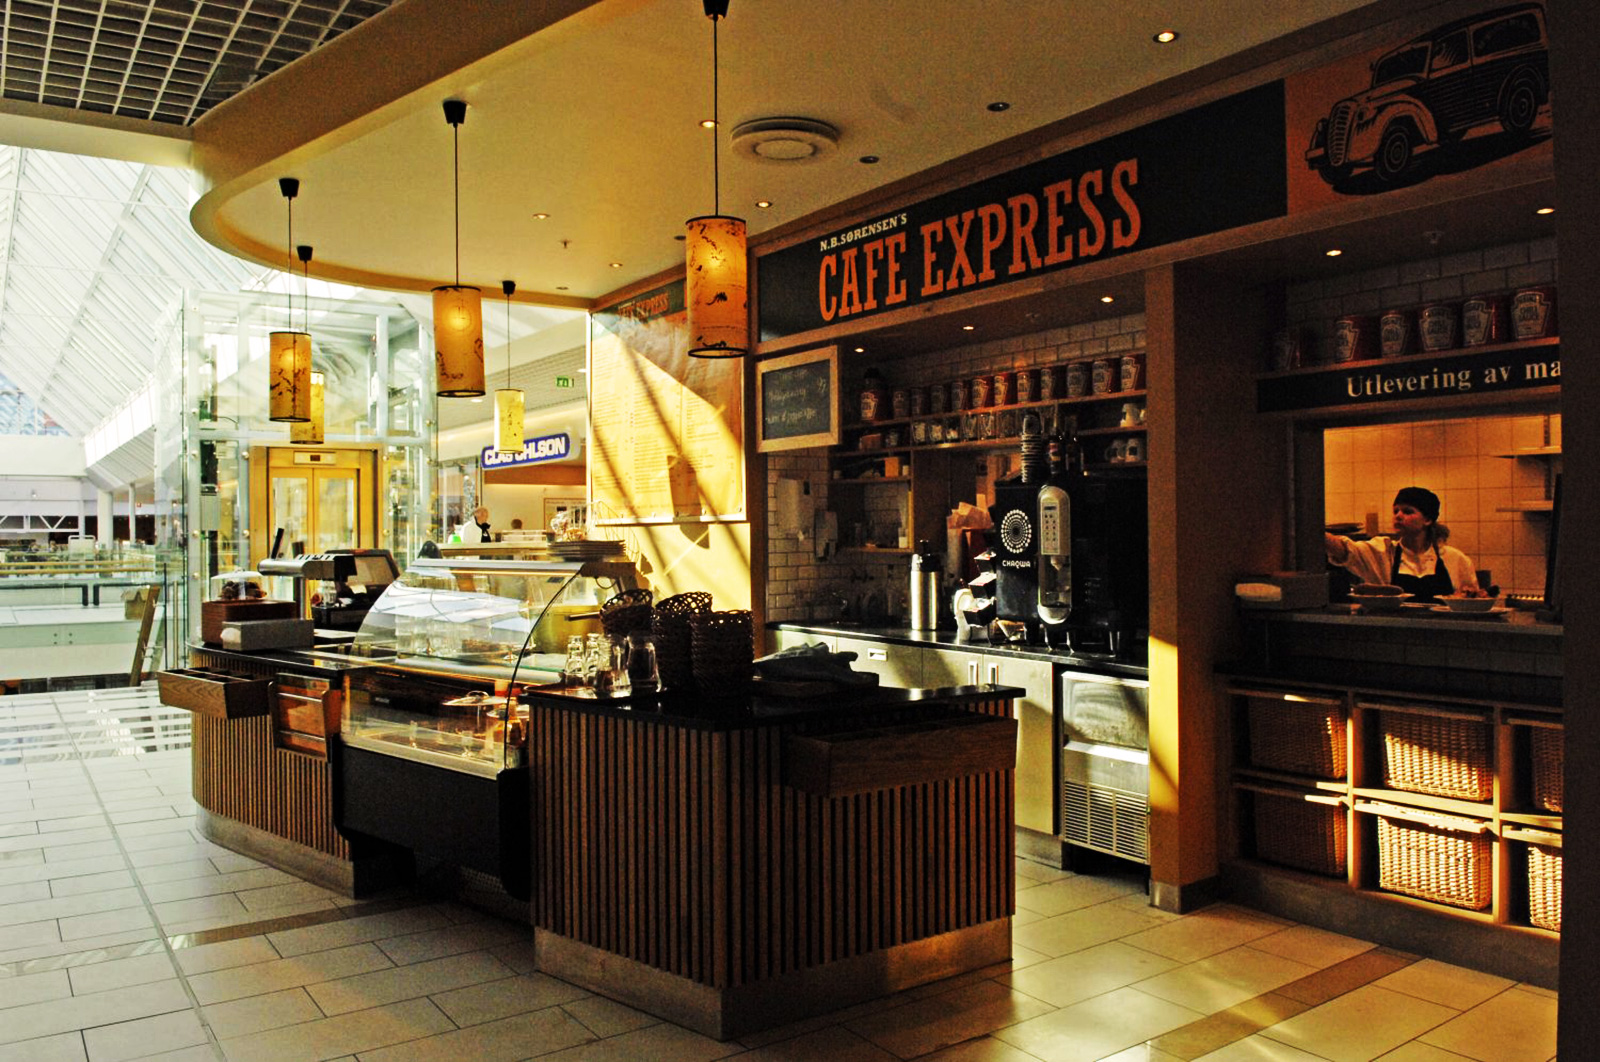 Vågane Viste - Referanser - Cafe express